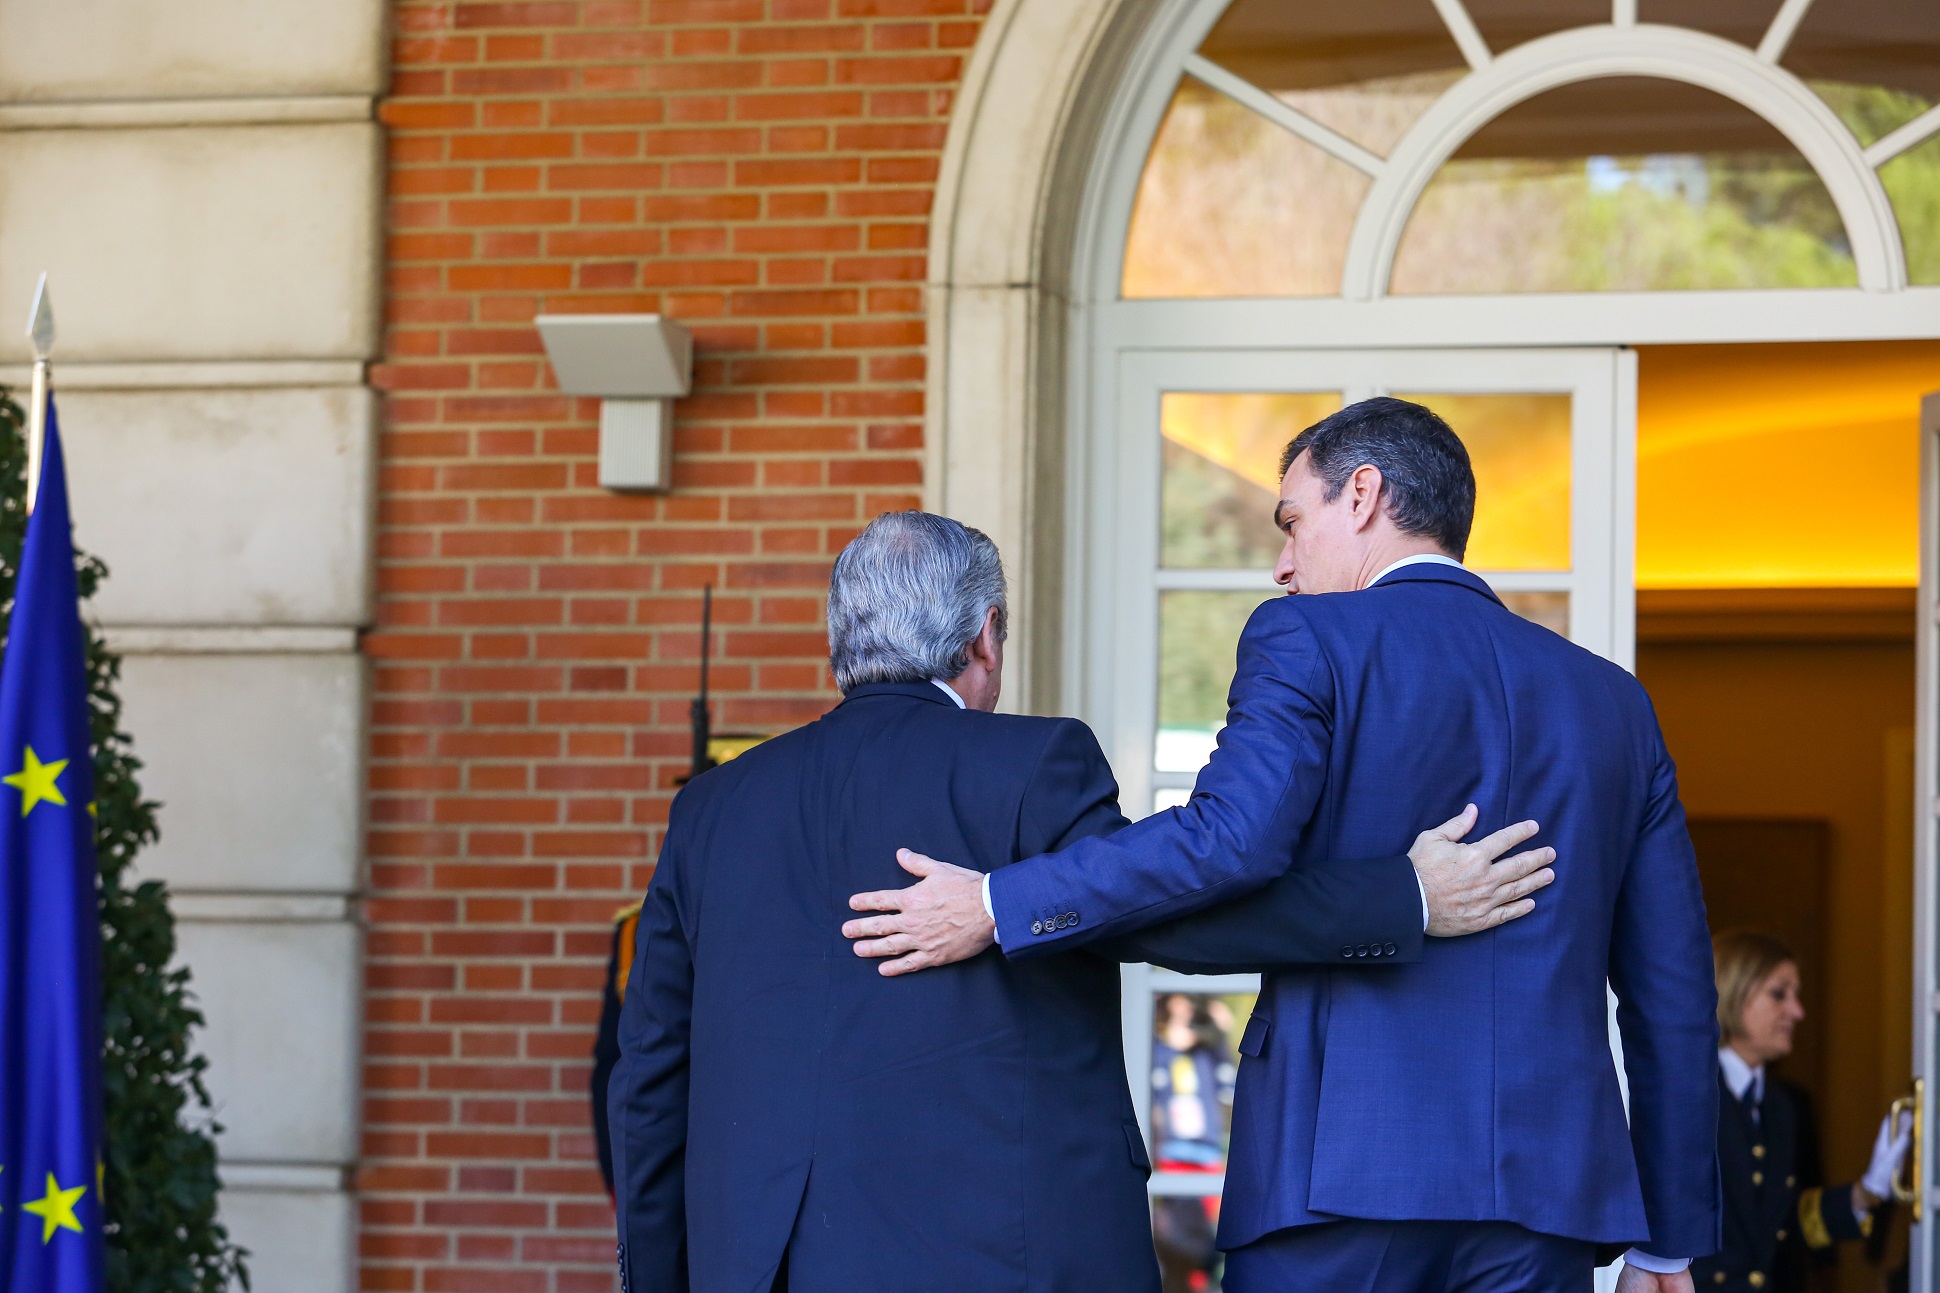 El presidente Alberto Fernández se reunió con el presidente del Gobierno español Pedro Sánchez